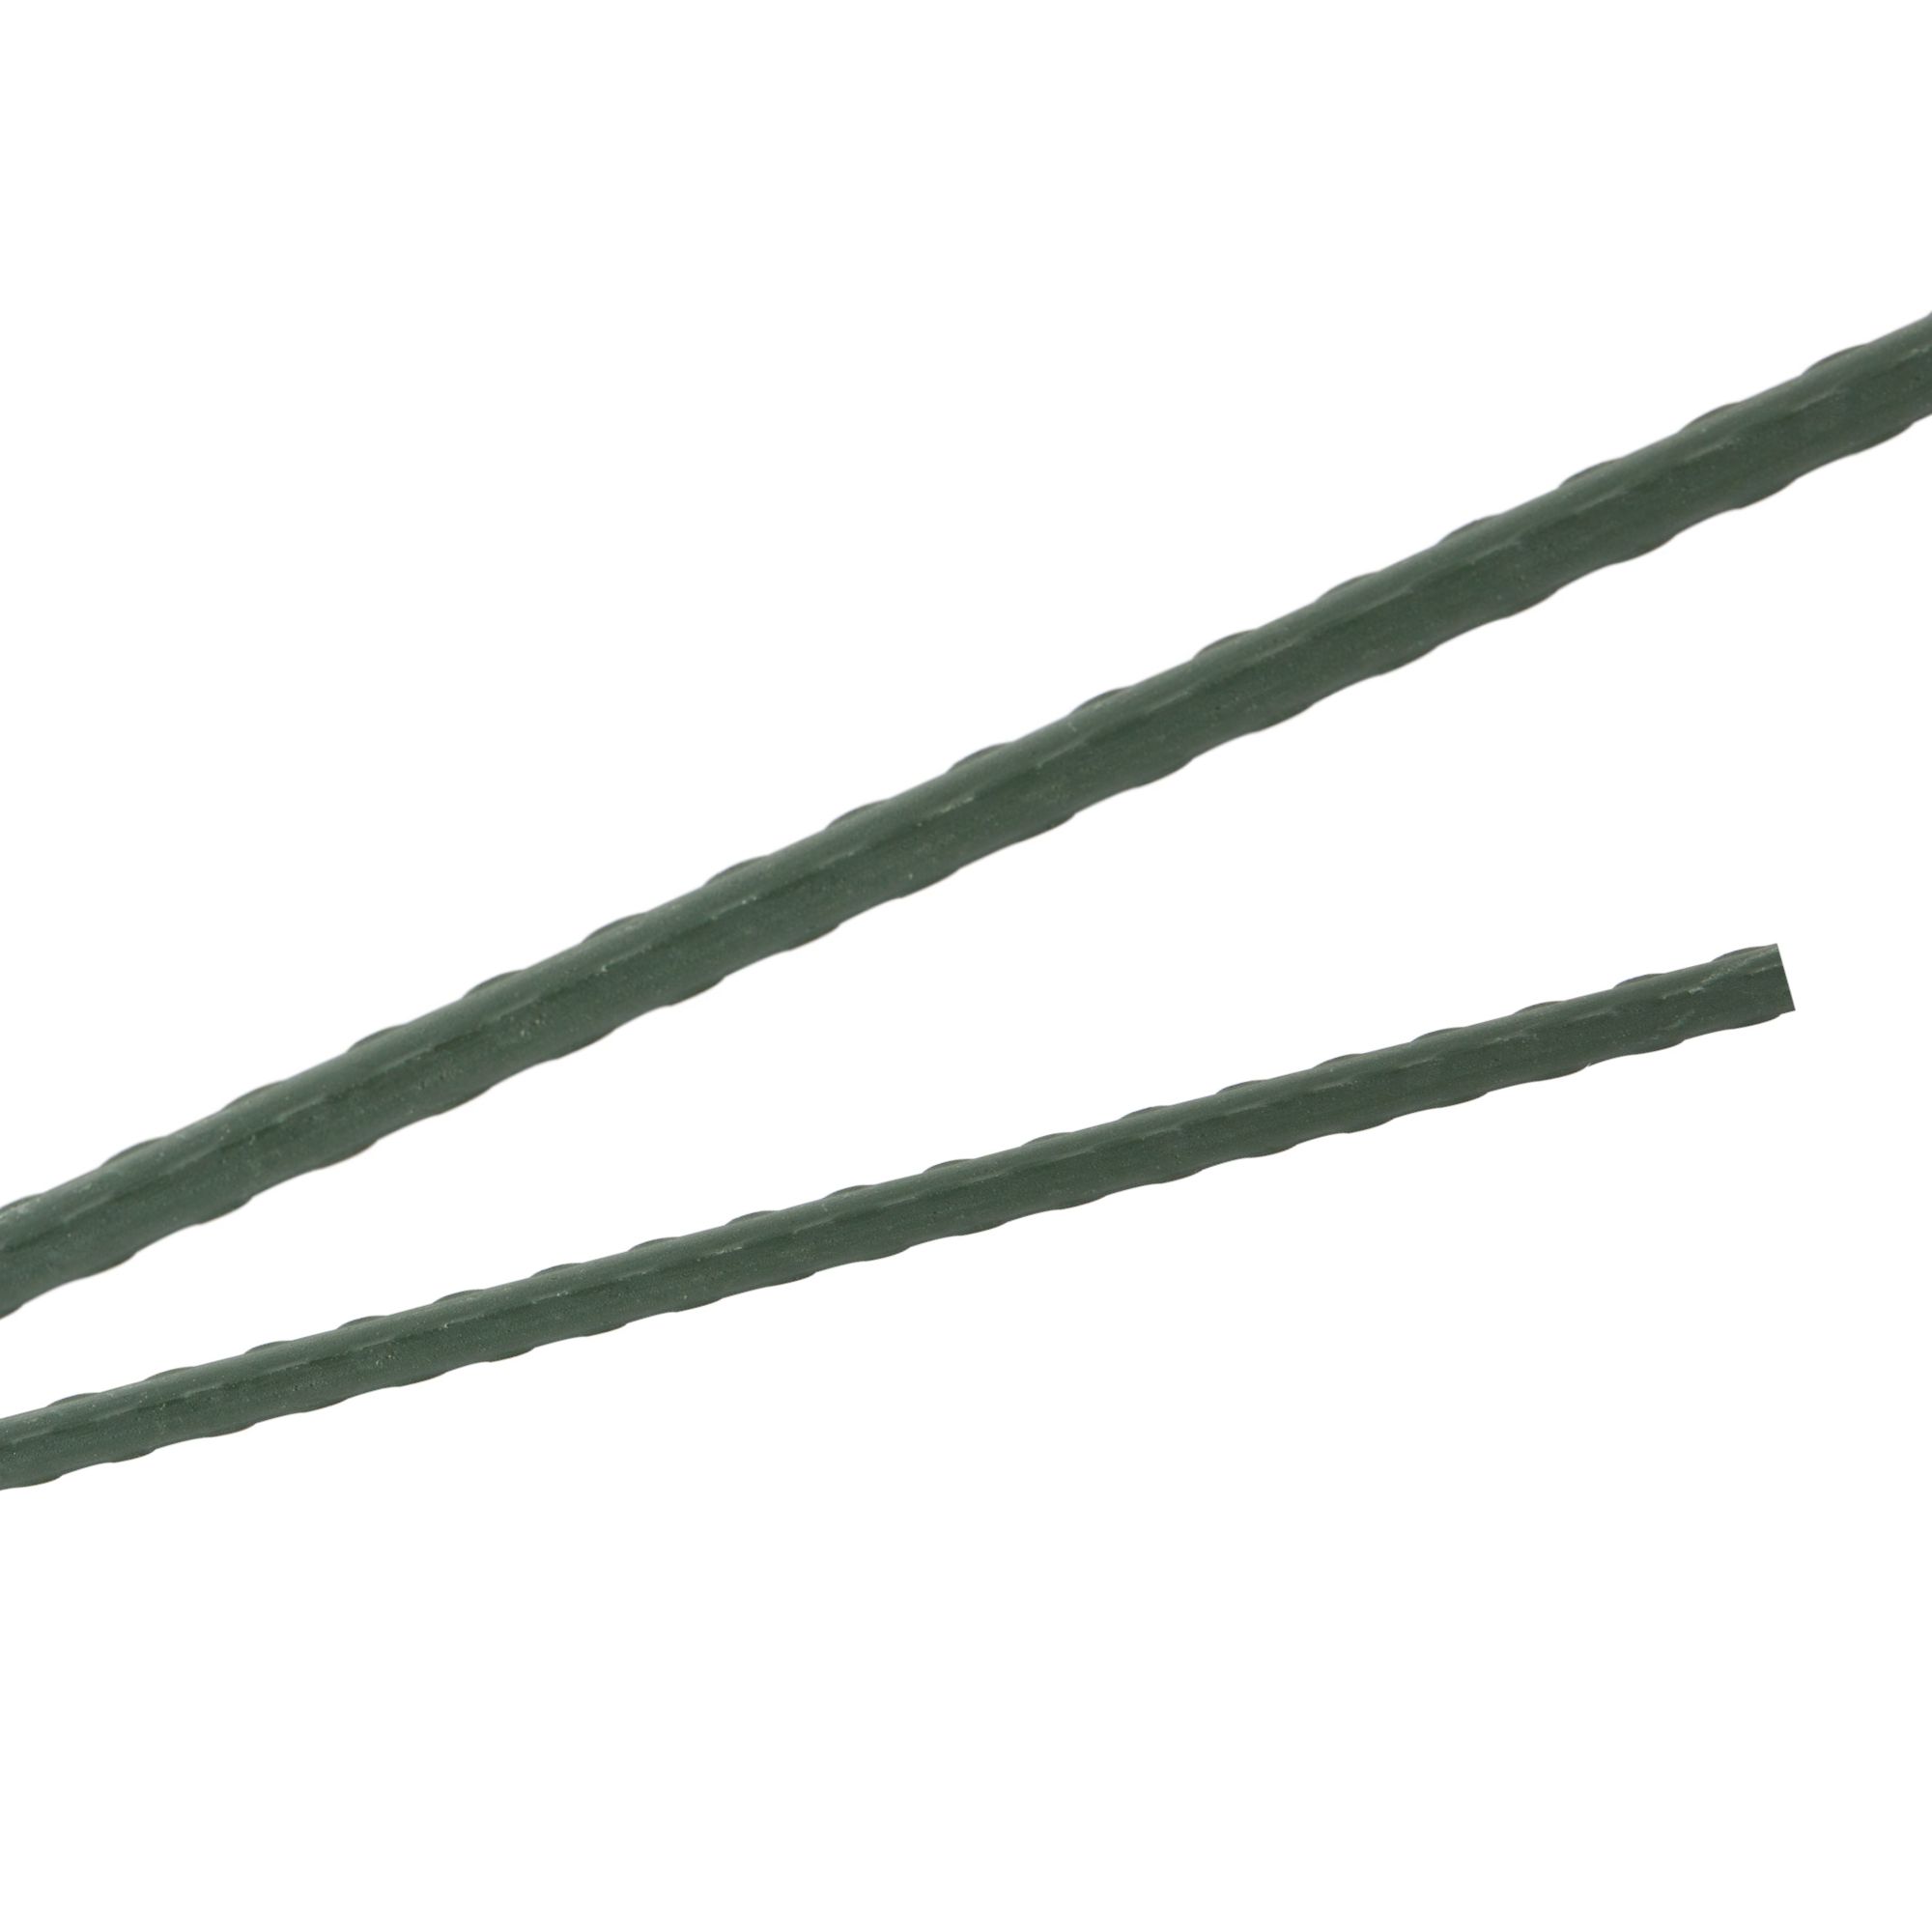 Tyč podpěrná, 20mm, 180cm, kov+PVC, zelená 0.280000 Kg GIGA Sklad20 211770 80